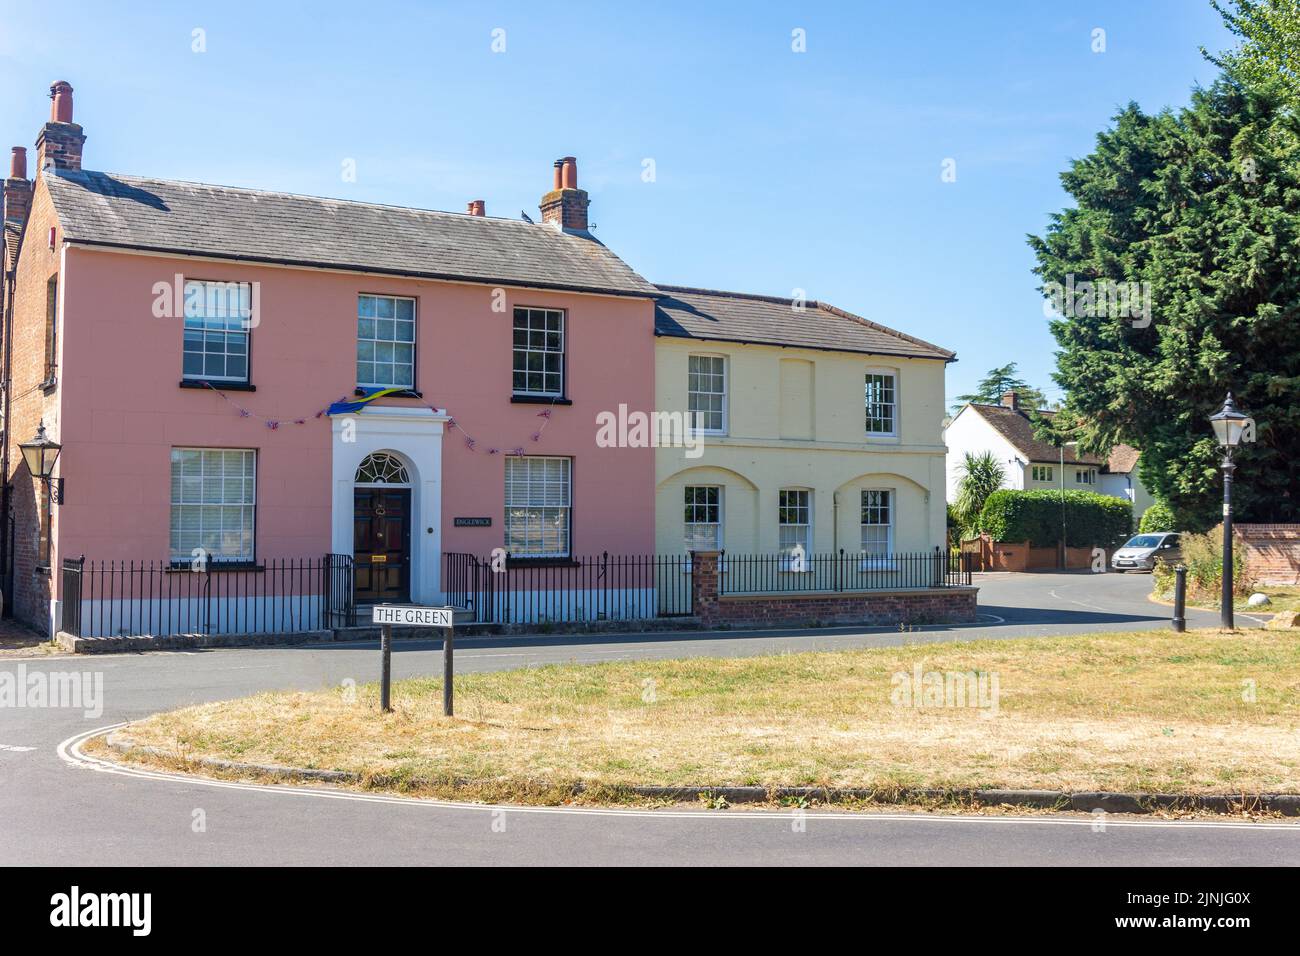 Maisons d'époque sur le Livre vert, Englefield Green, Surrey, Angleterre, Royaume-Uni Banque D'Images